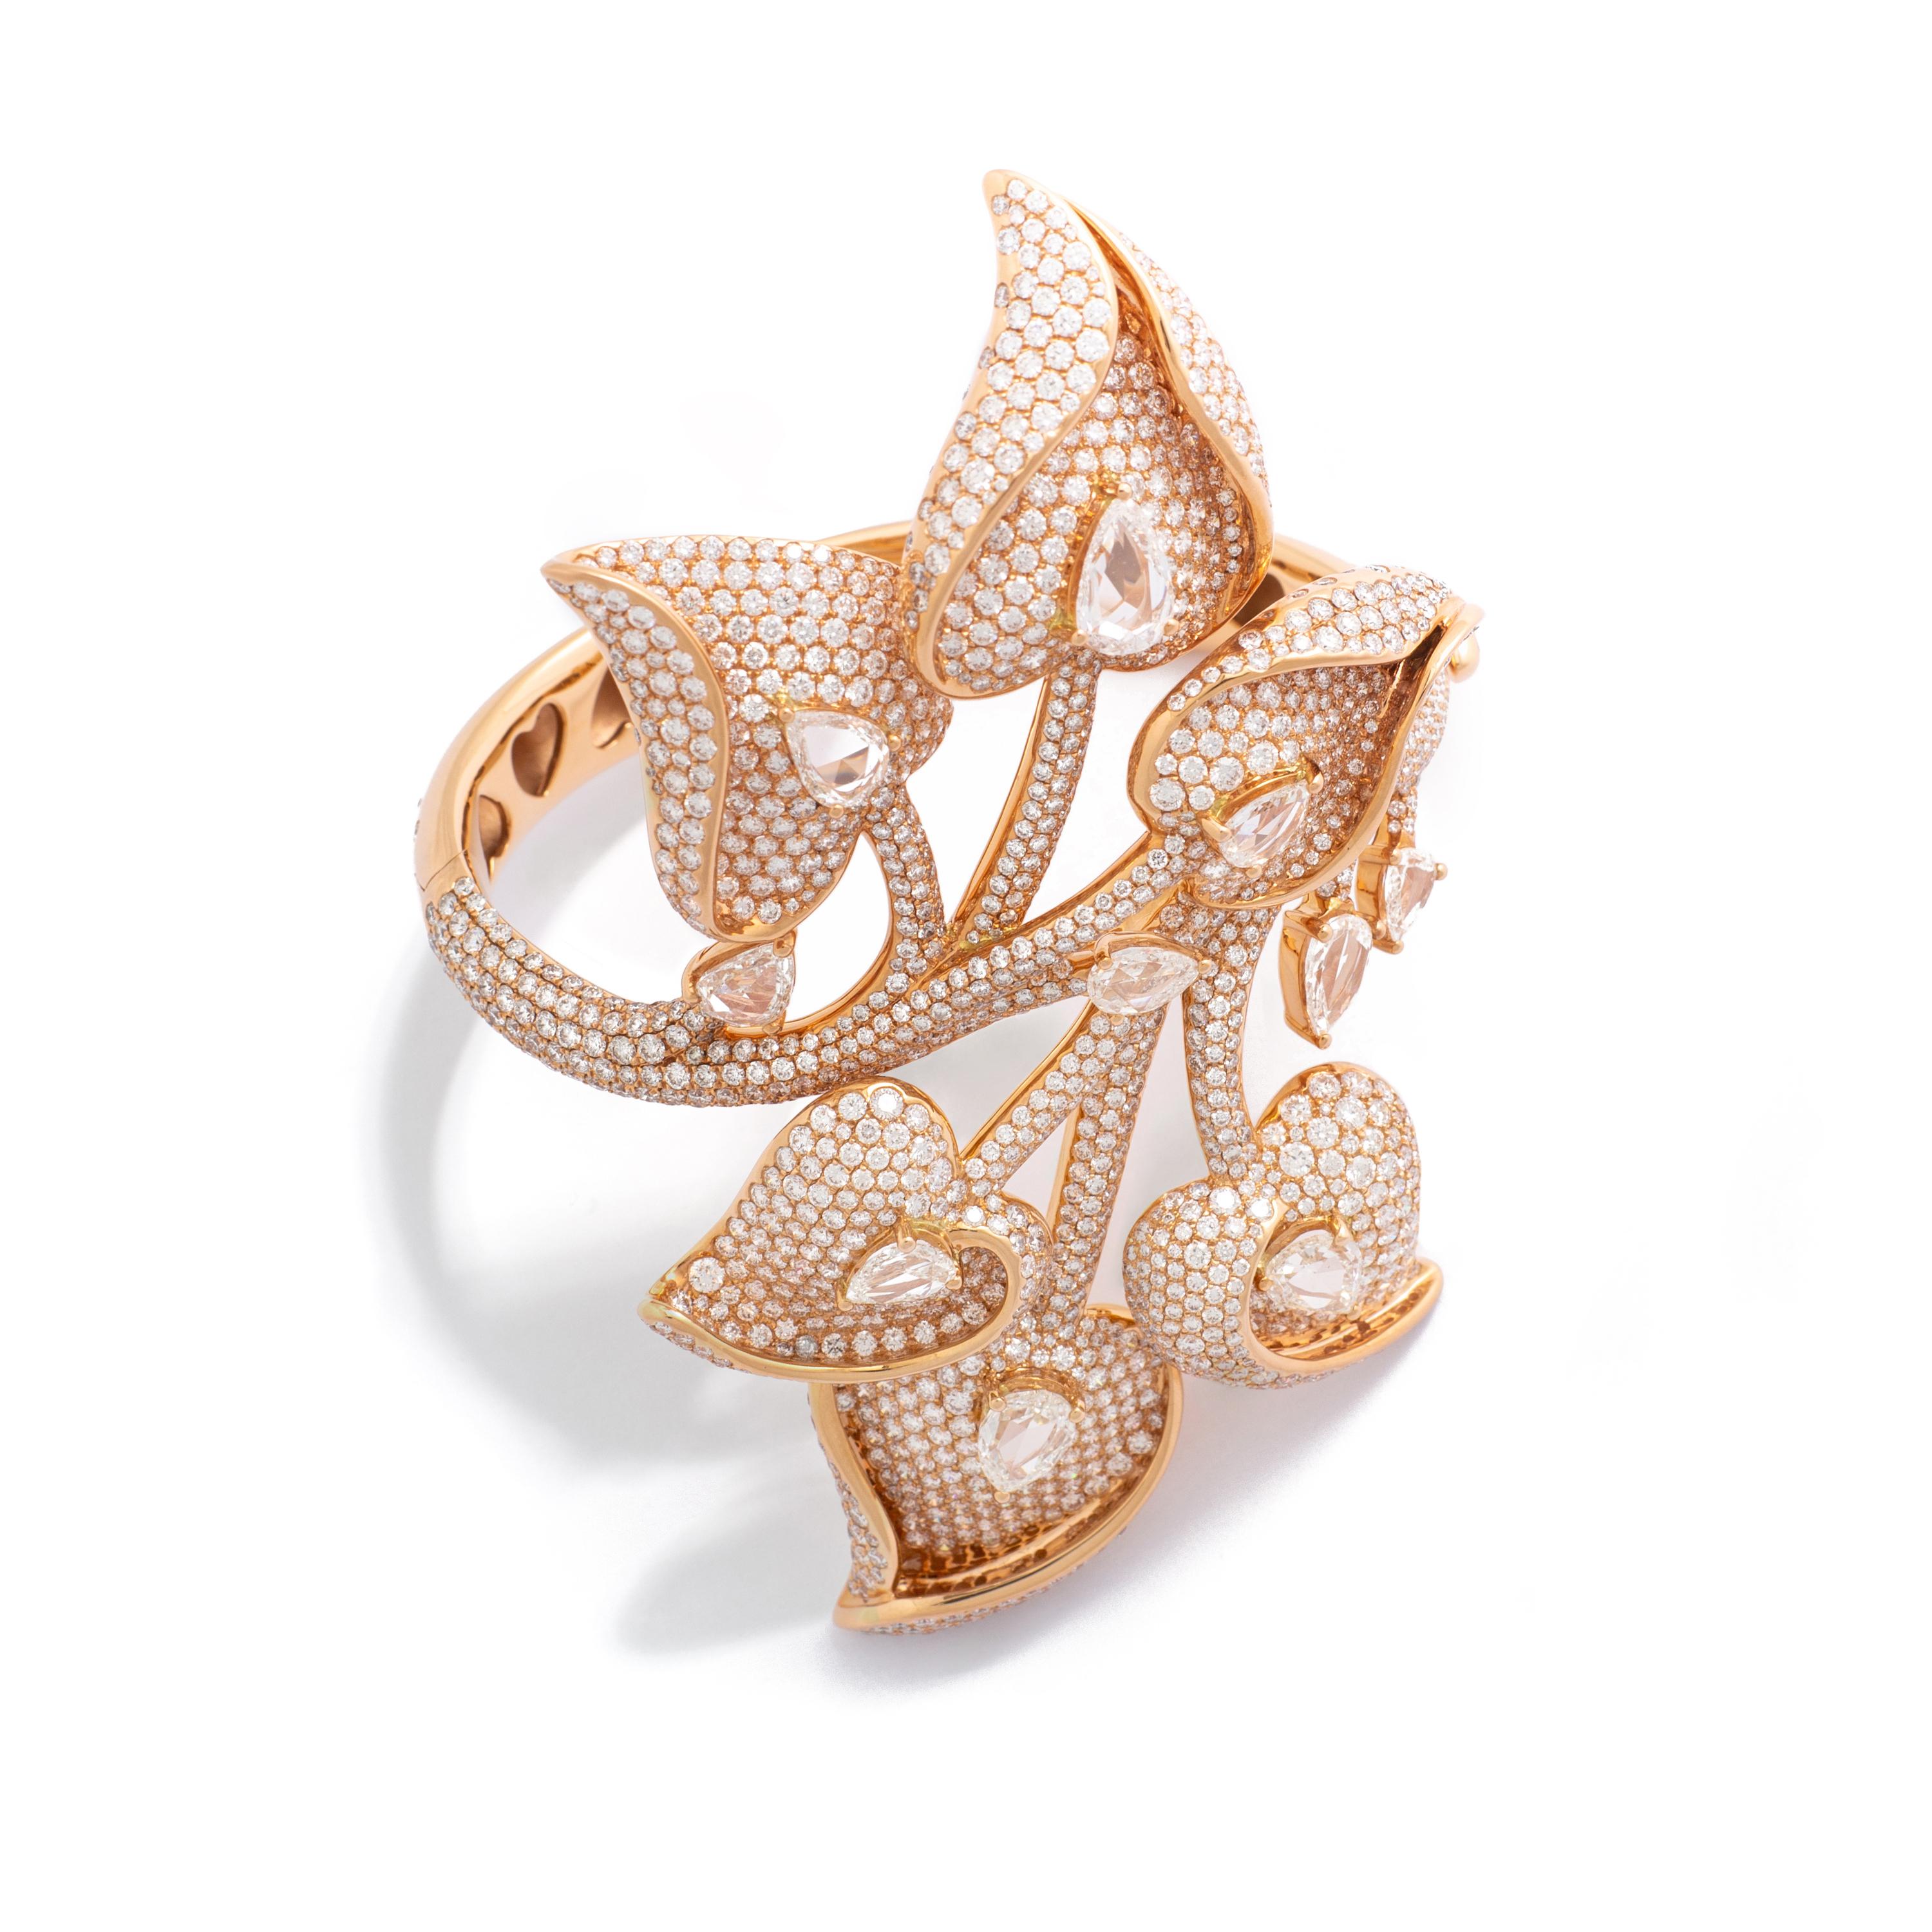 Bracelet pink gold 18K, 1637 diamonds 20.75cts 10 pear shape diamonds 6.80cts.